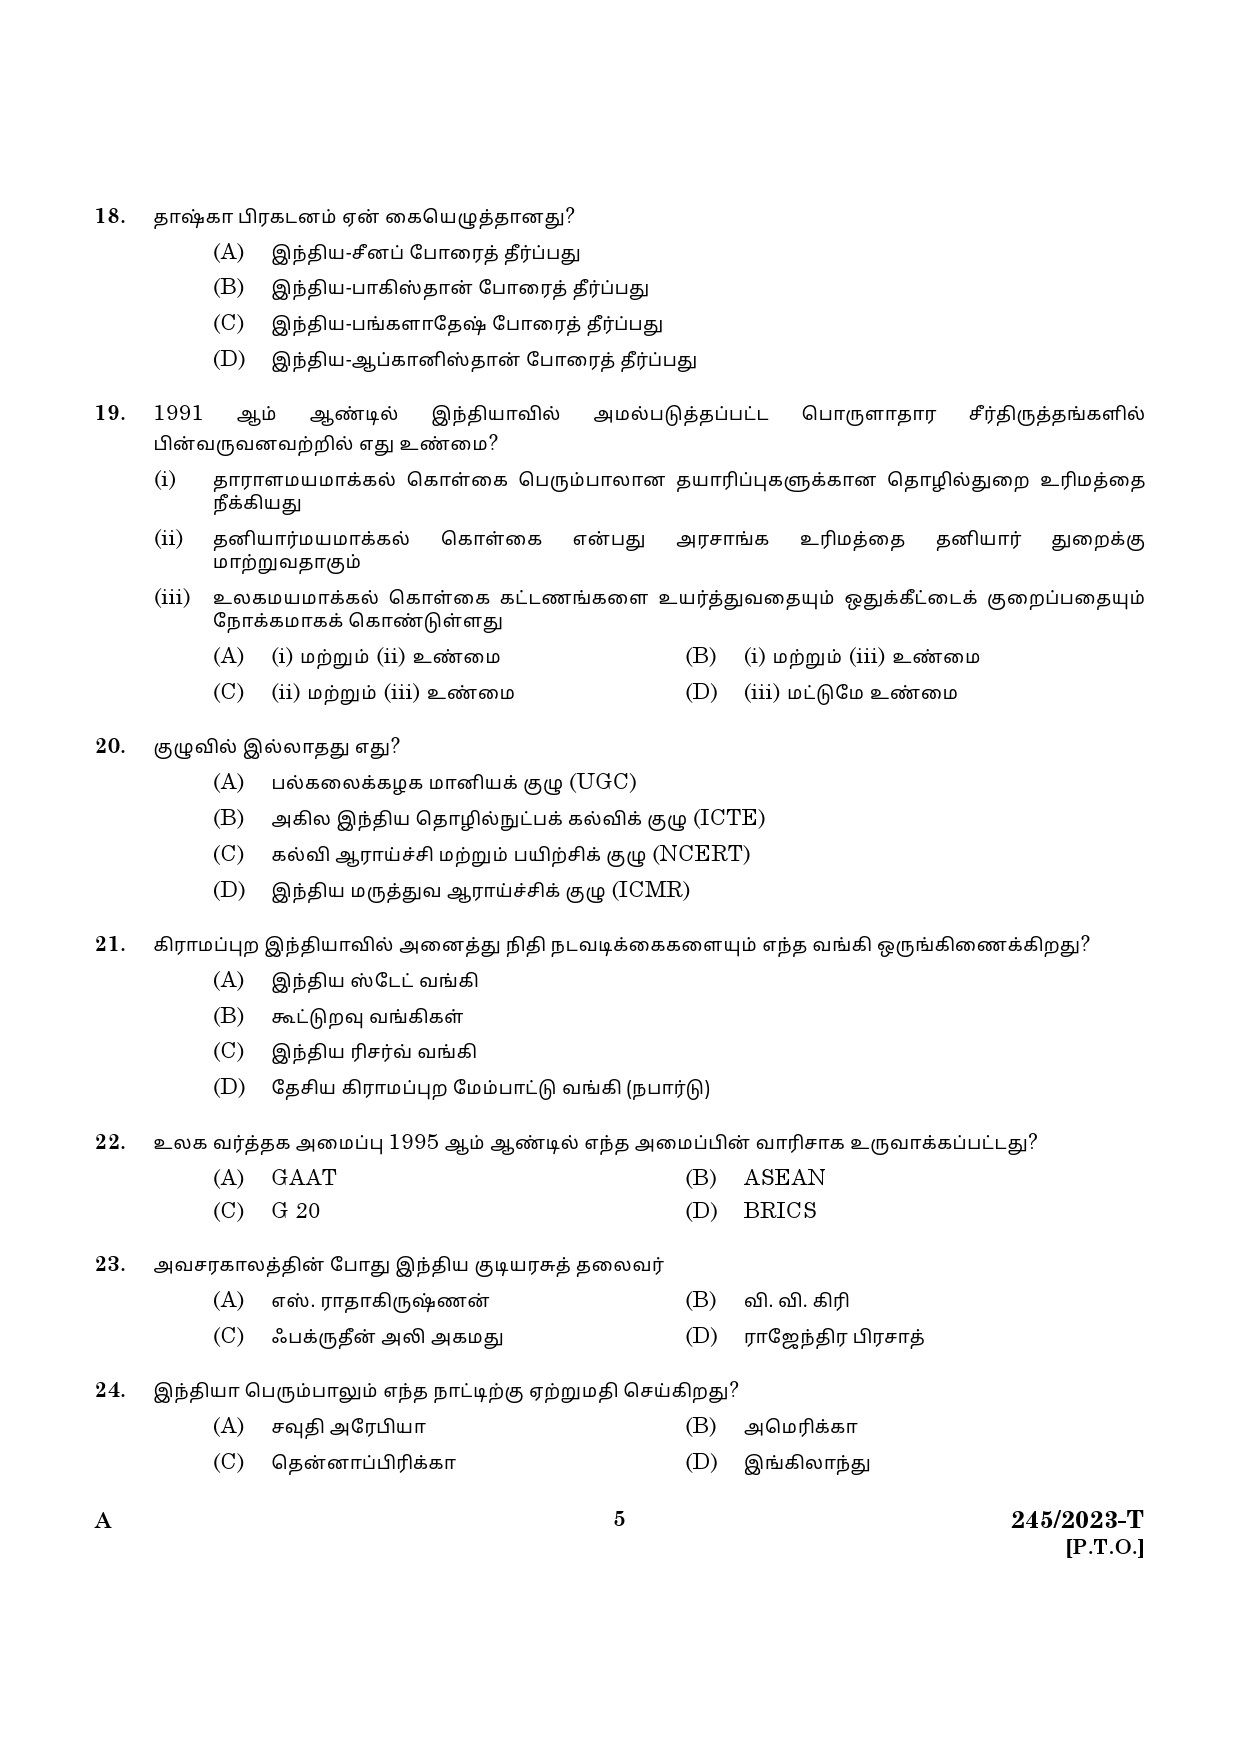 KPSC LGS Tamil Exam 2023 Code 2452023 T 3